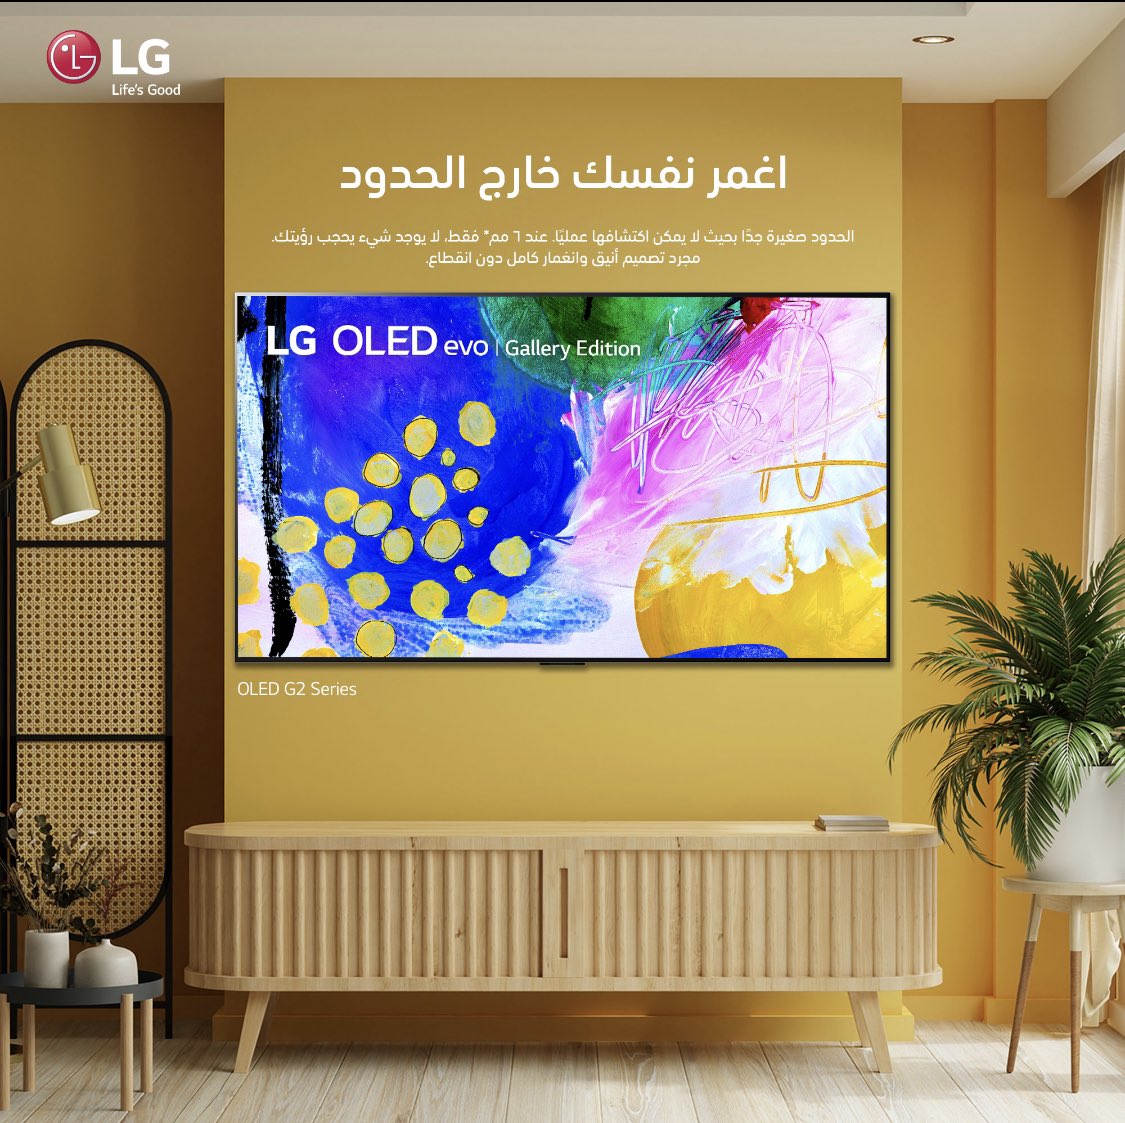 لوحة فنية أم جهاز تلفزيون؟
يمكنك عرض اللوحات الفنية بنسيج ولون شديد الواقعية، عندما يكون التلفزيون مغلقًا.

 متوفرة في معارض شاكر والموقع الالكتروني 

#SHAKER_GROUP #LG #LGSaudi #LGOLEDTV #GAMING #OLEDevo #LGOLEDevo #LGOLED
#الـجي #شاشةـألعاب #إل_جي_أوليد #شاكر